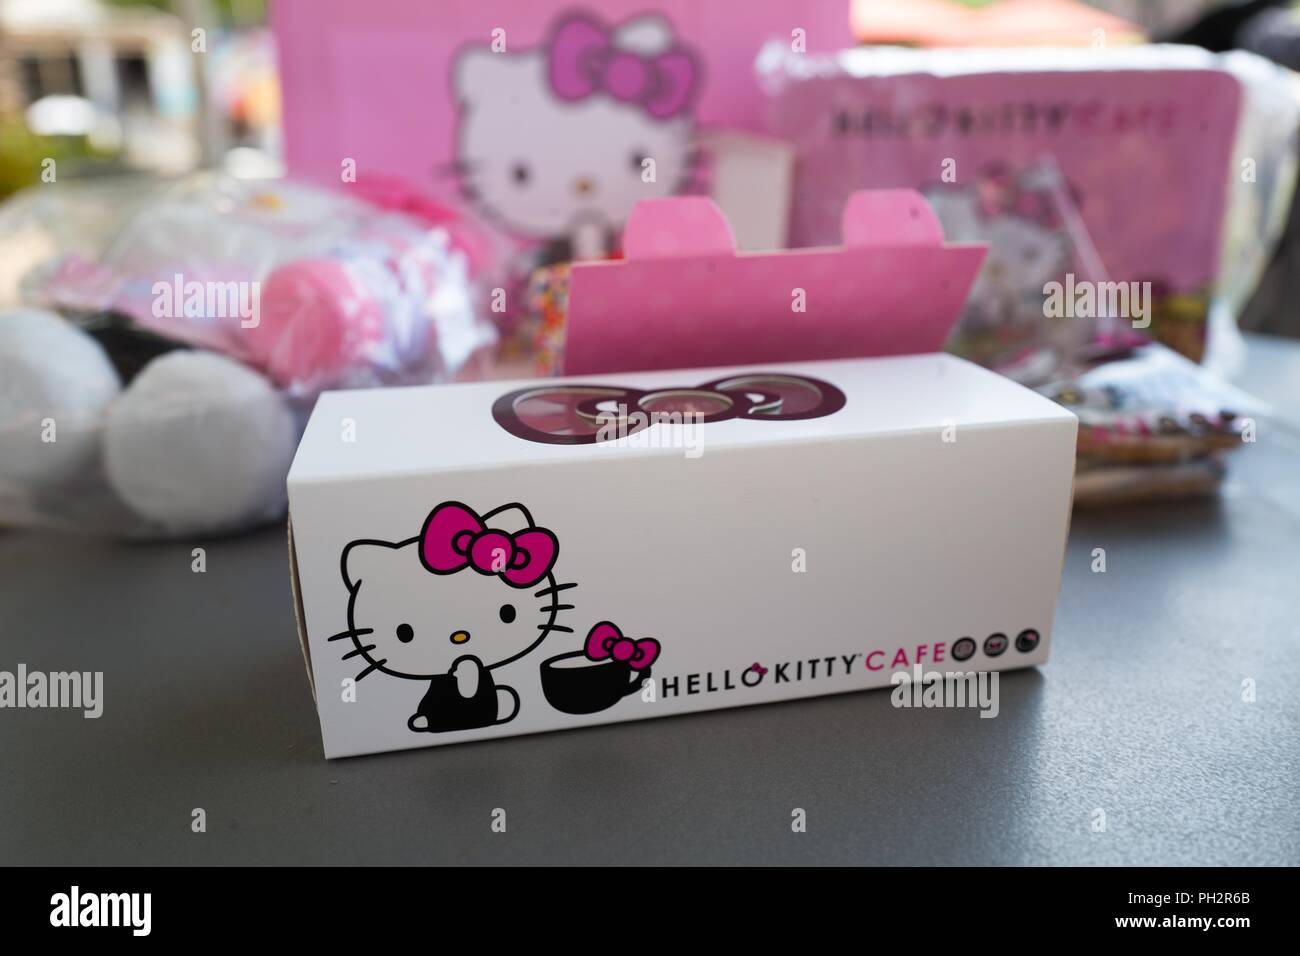 Marchandises sur l'affichage à l'Hello Kitty Café, un café ouvert récemment exploité par la compagnie japonaise Sanrio, sur Santana Row dans la Silicon Valley, San Jose, Californie, le 18 juillet 2018. () Banque D'Images